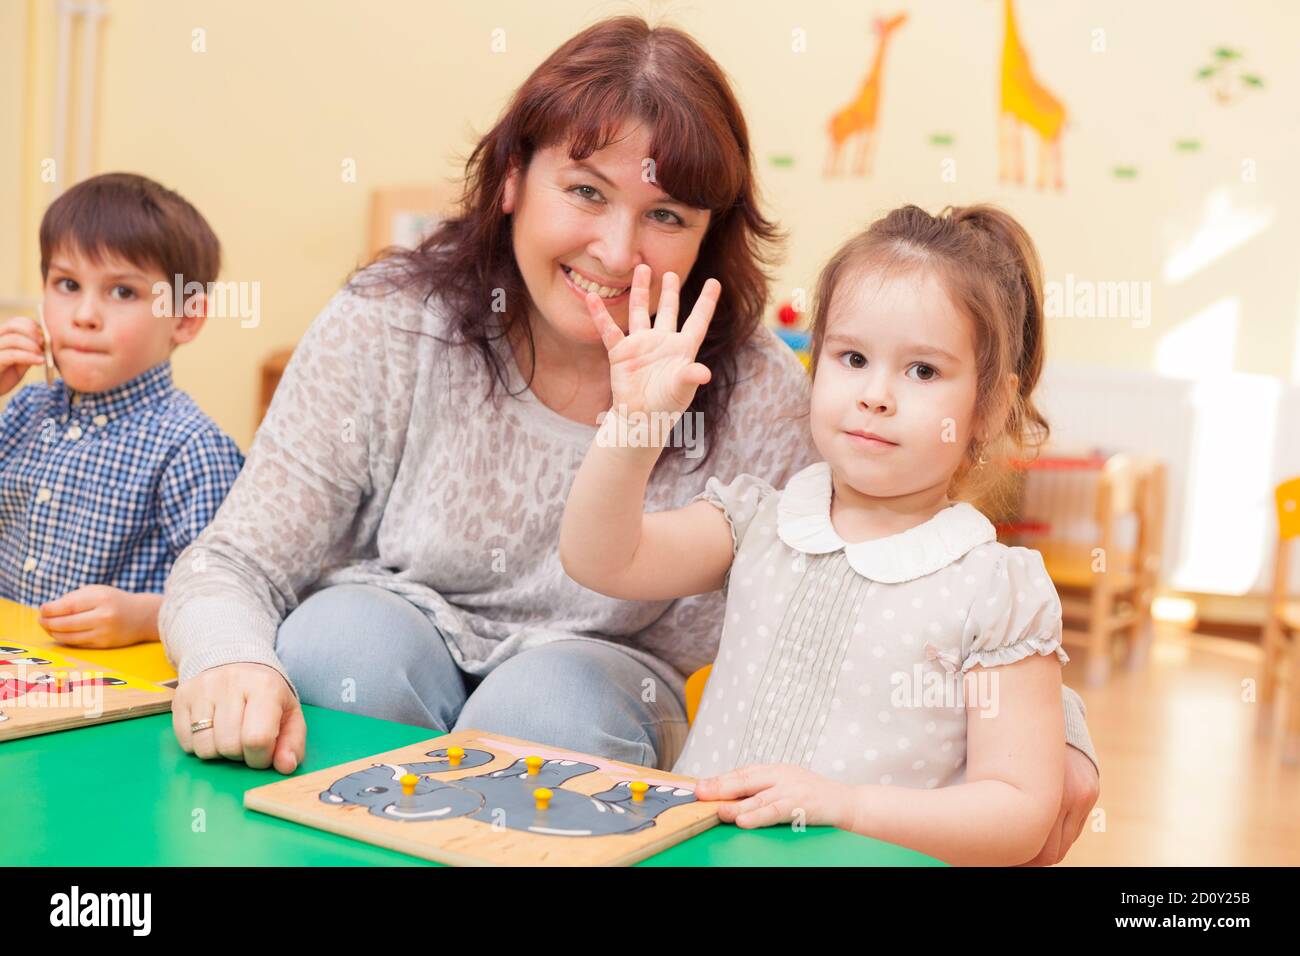 une petite fille mignonne a soulevé la main pour répondre. enseignante assise à côté. Belle femme caucasienne mature. Ils regardent la caméra et sourient. Horiz Banque D'Images